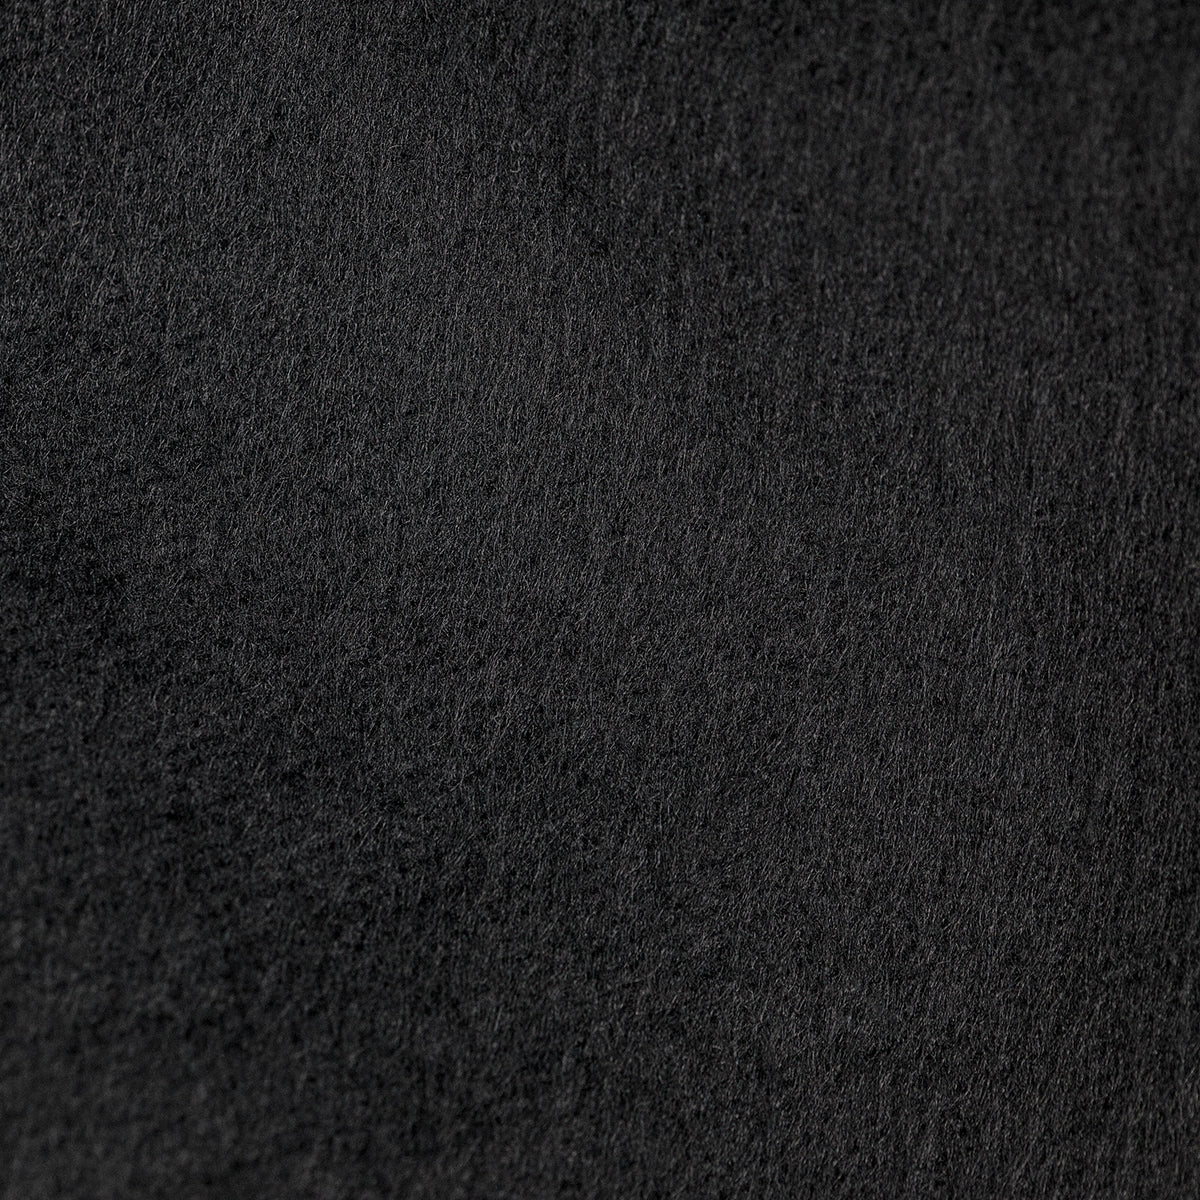 Scrim Jim Cine Unbleached Muslin/Black Fabric (4' x 6')